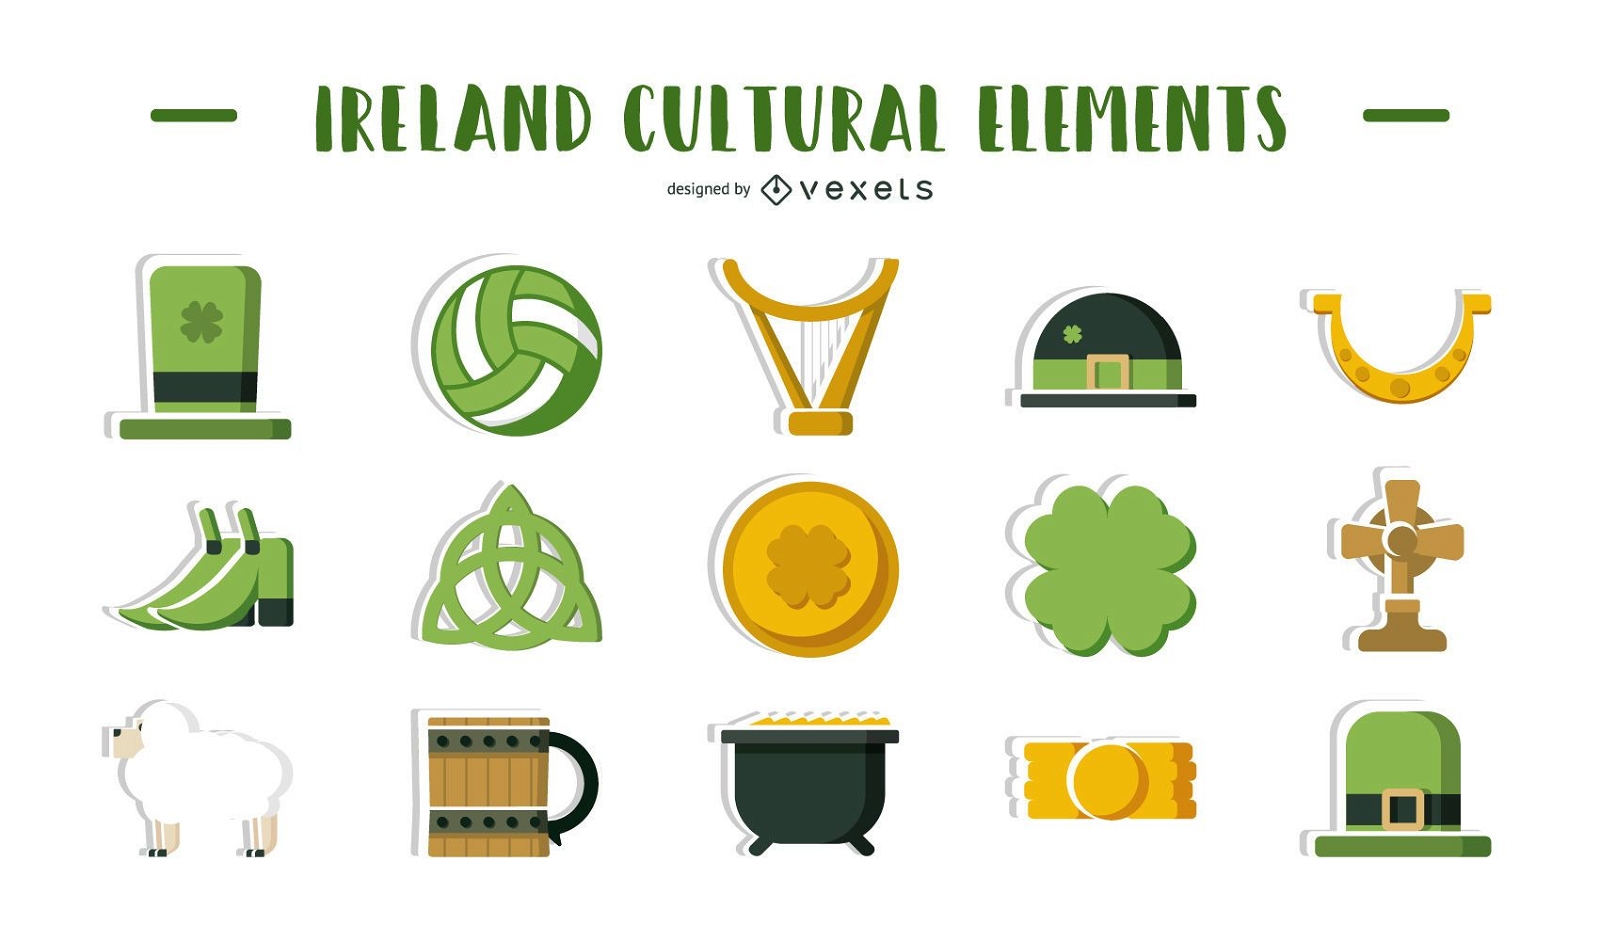 Ilustraci?n de elementos culturales de Irlanda